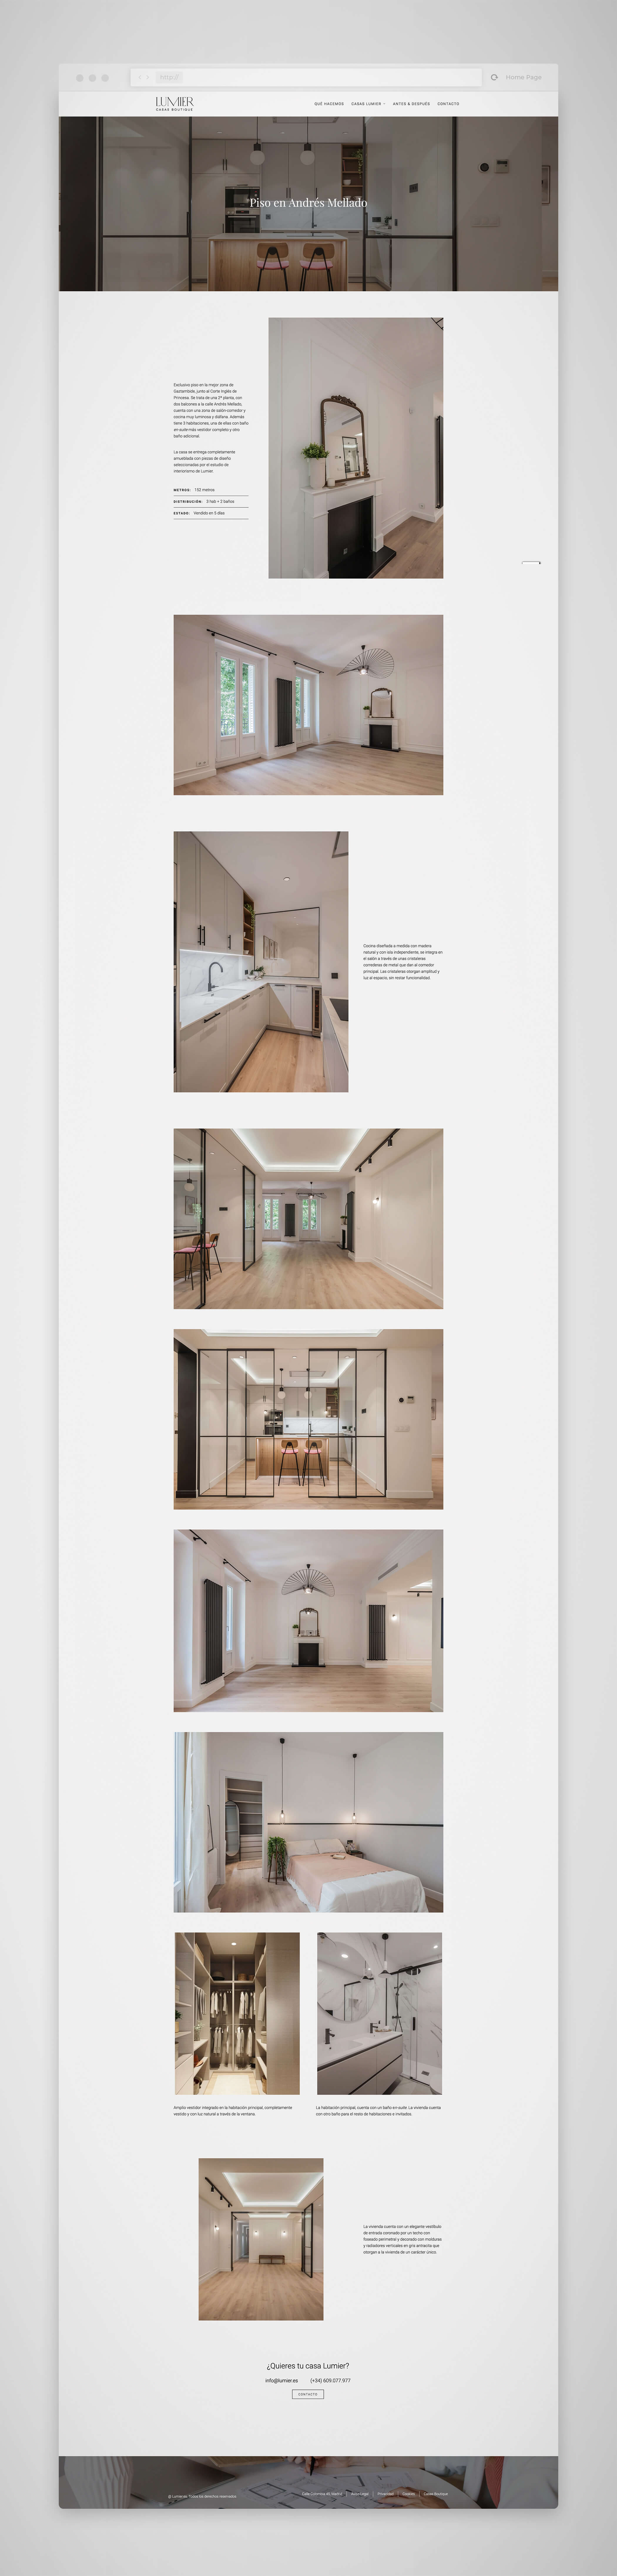 Diseño páginas web Madrid, Lumier casas boutique